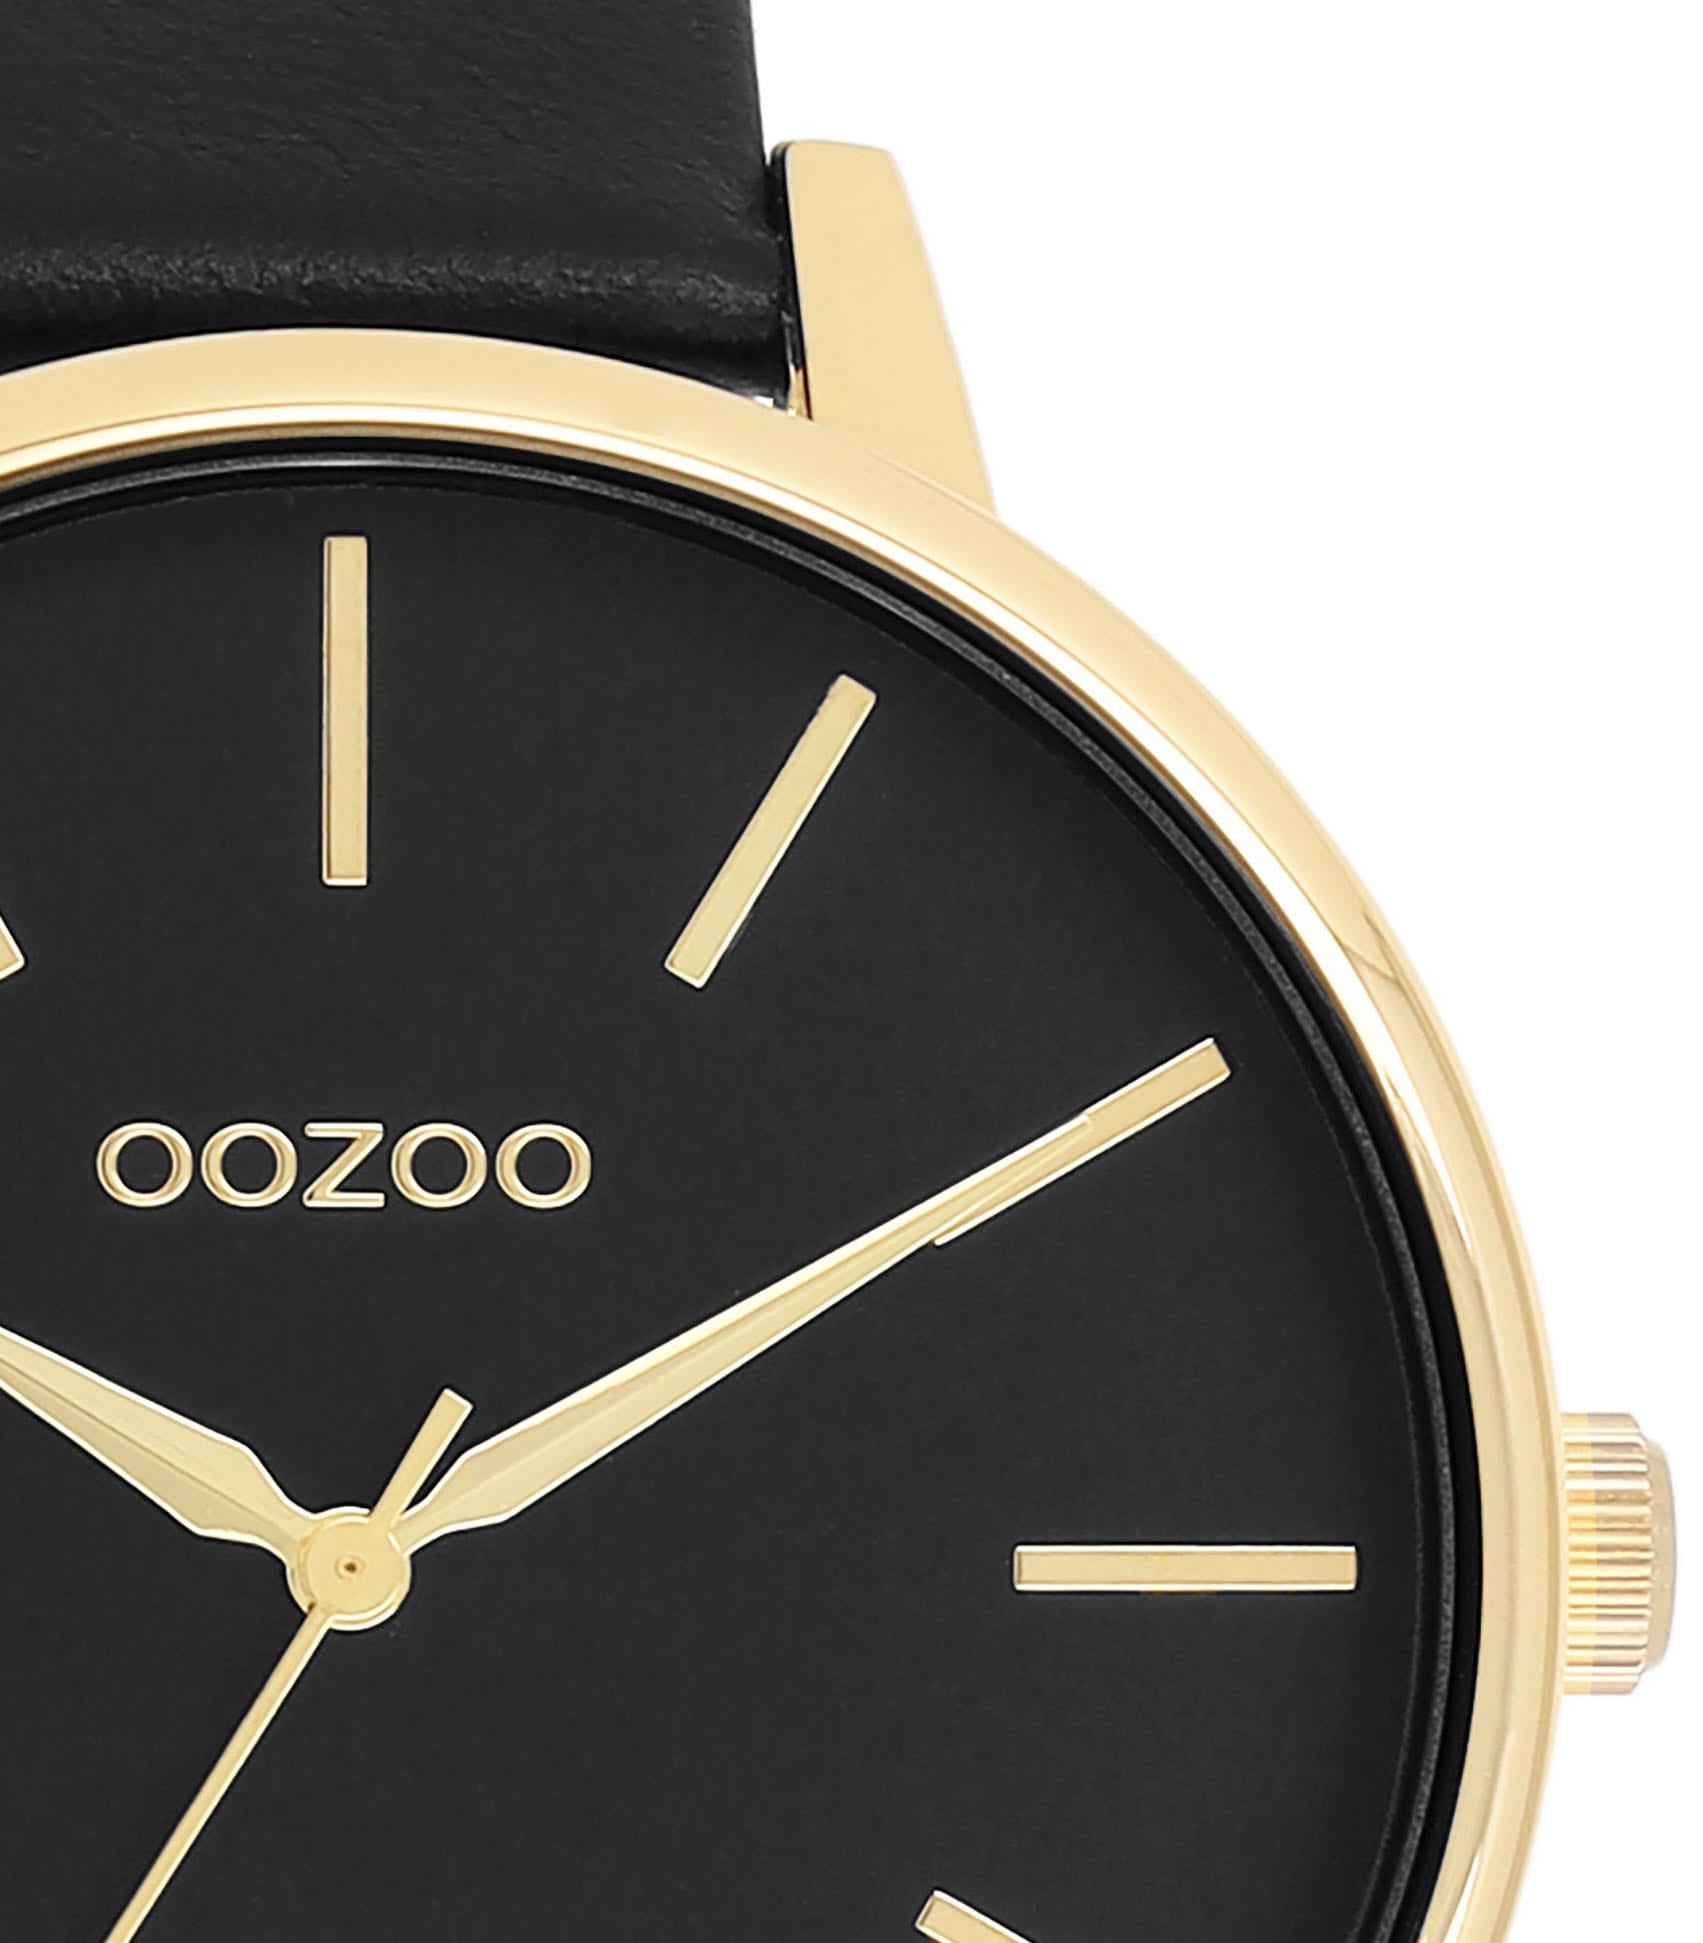 OOZOO Quarzuhr »C11294« kaufen | BAUR